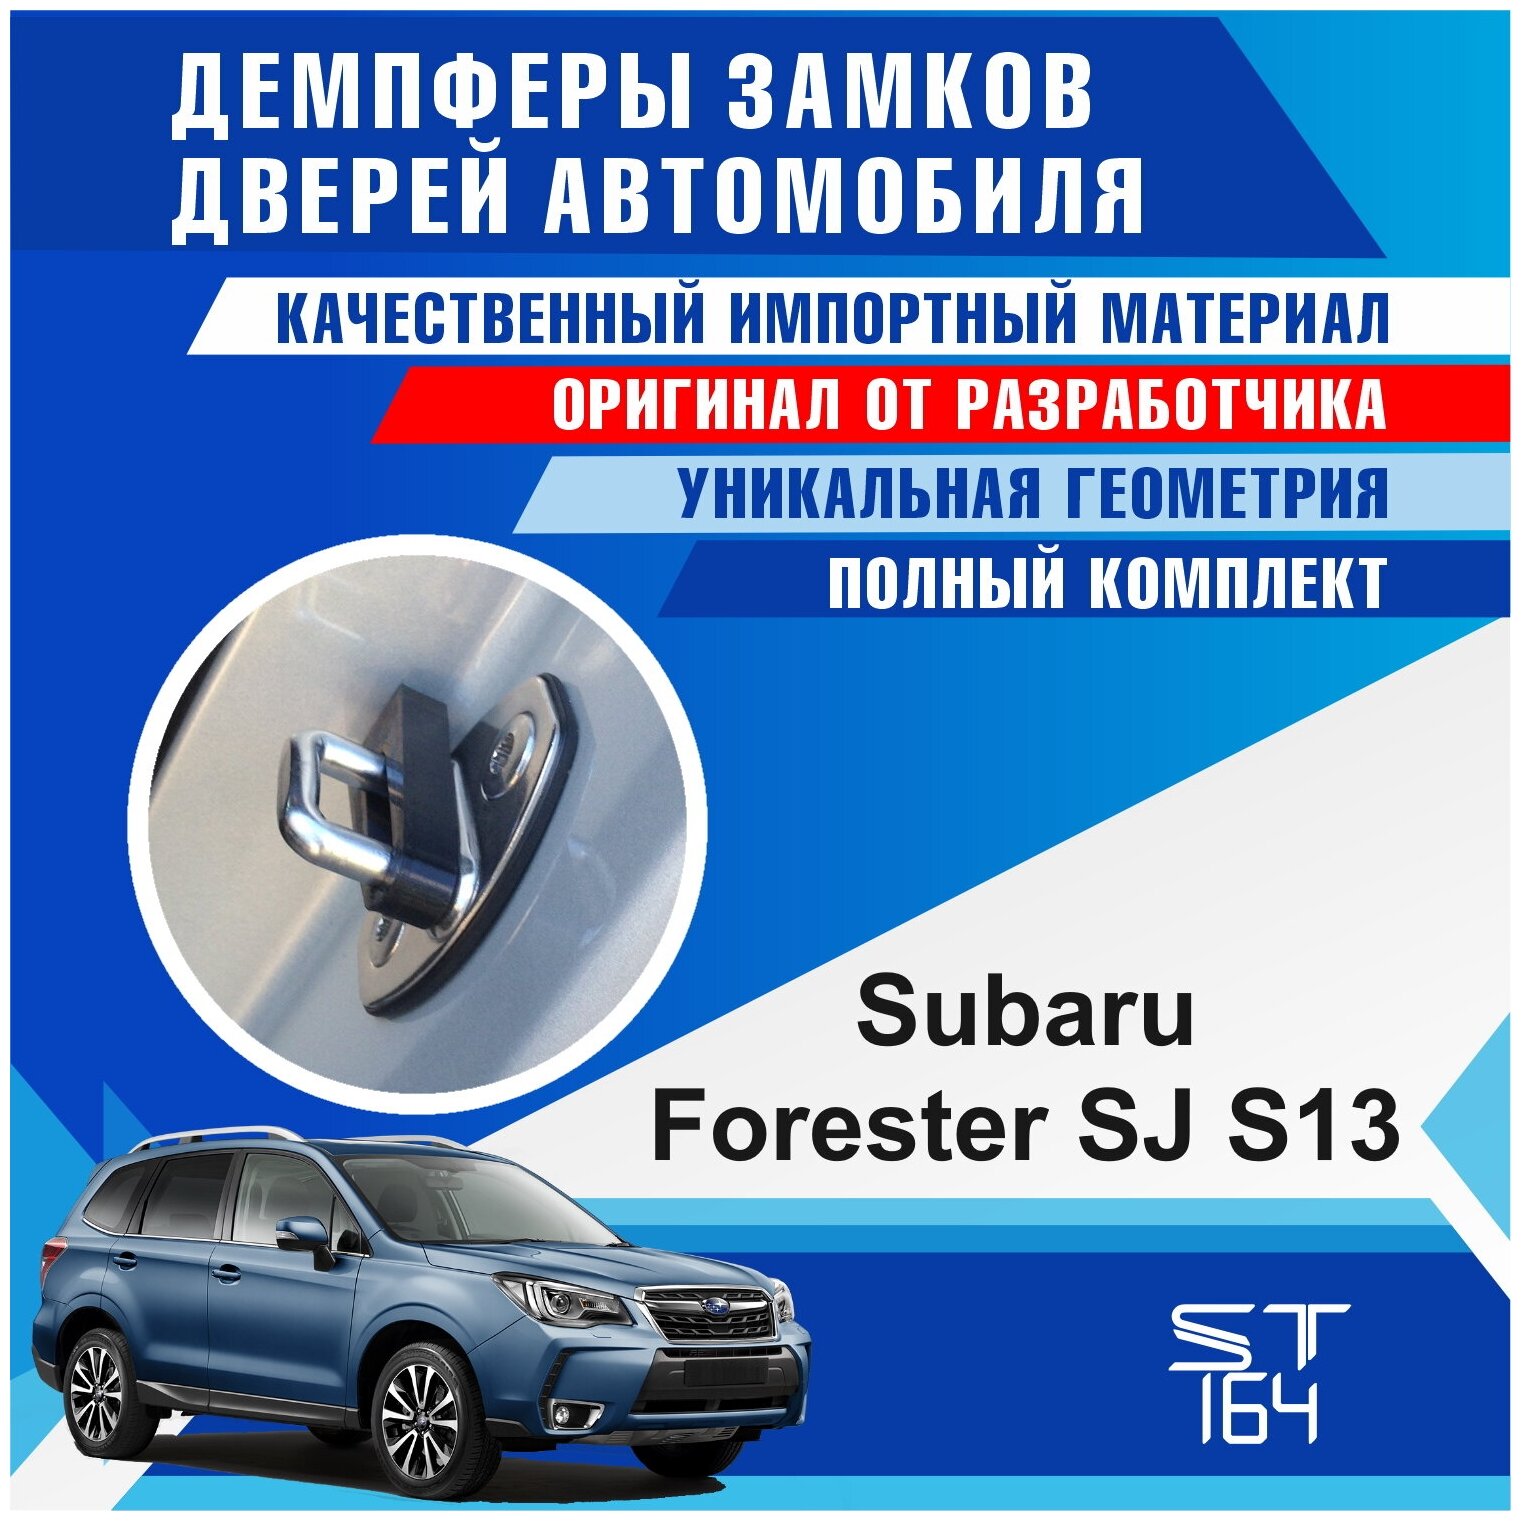 Демпферы замков дверей Субару Форестер SJ S13 ( Subaru Forester SJ S13 ), на 4 двери + смазка